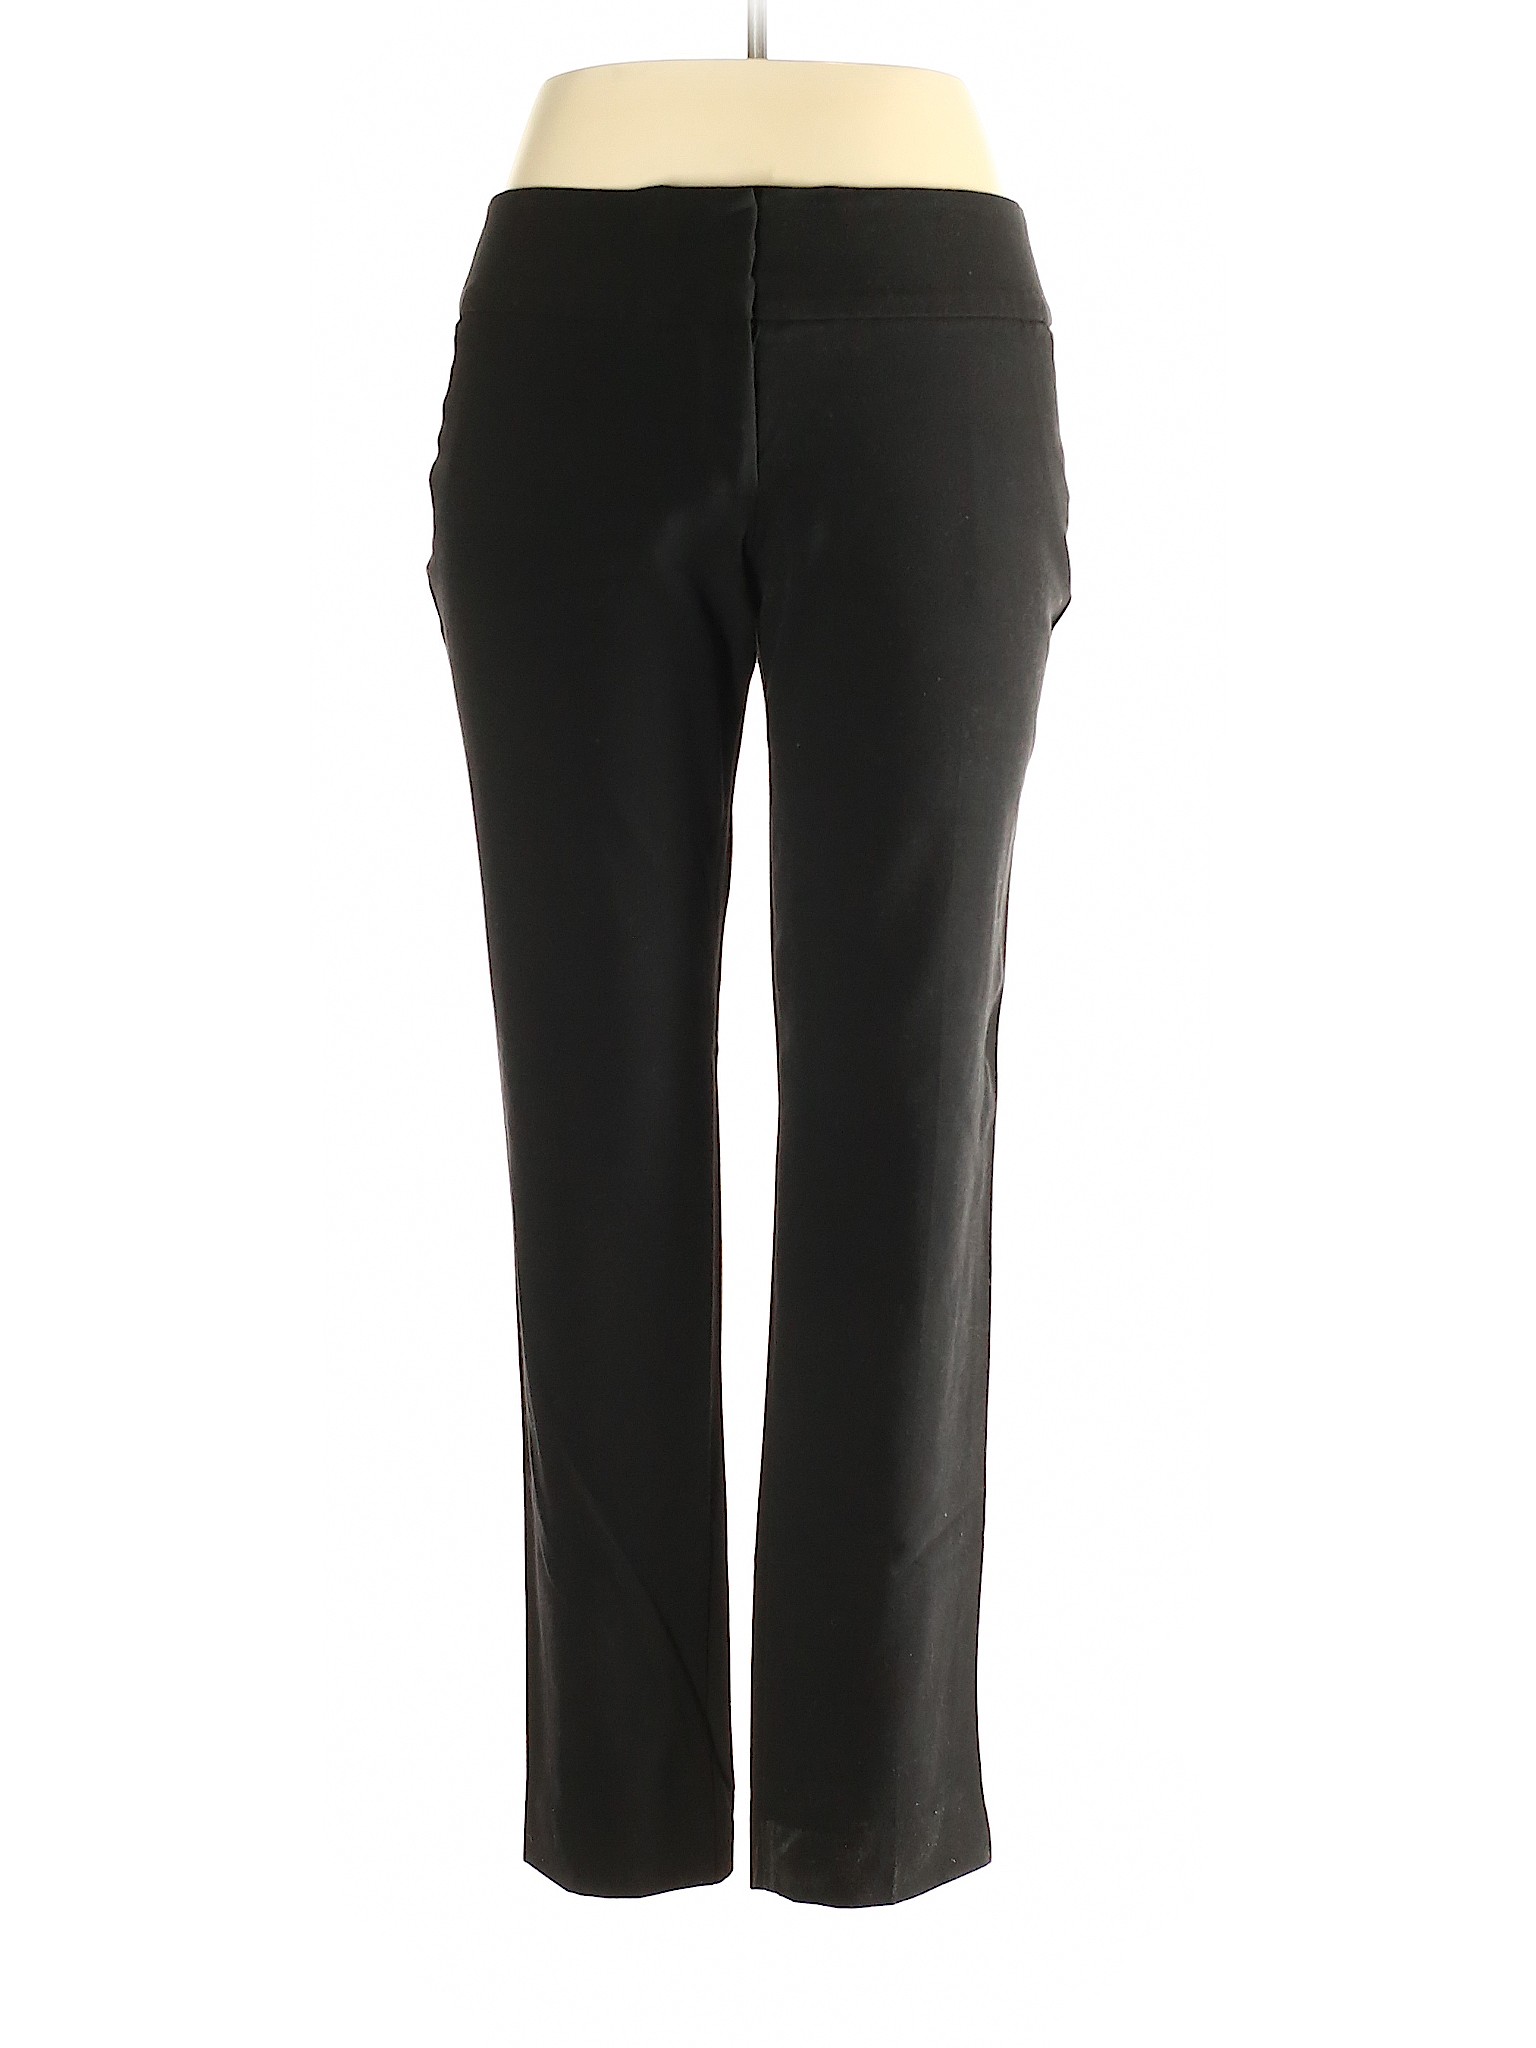 BCX Women Black Dress Pants 13 | eBay